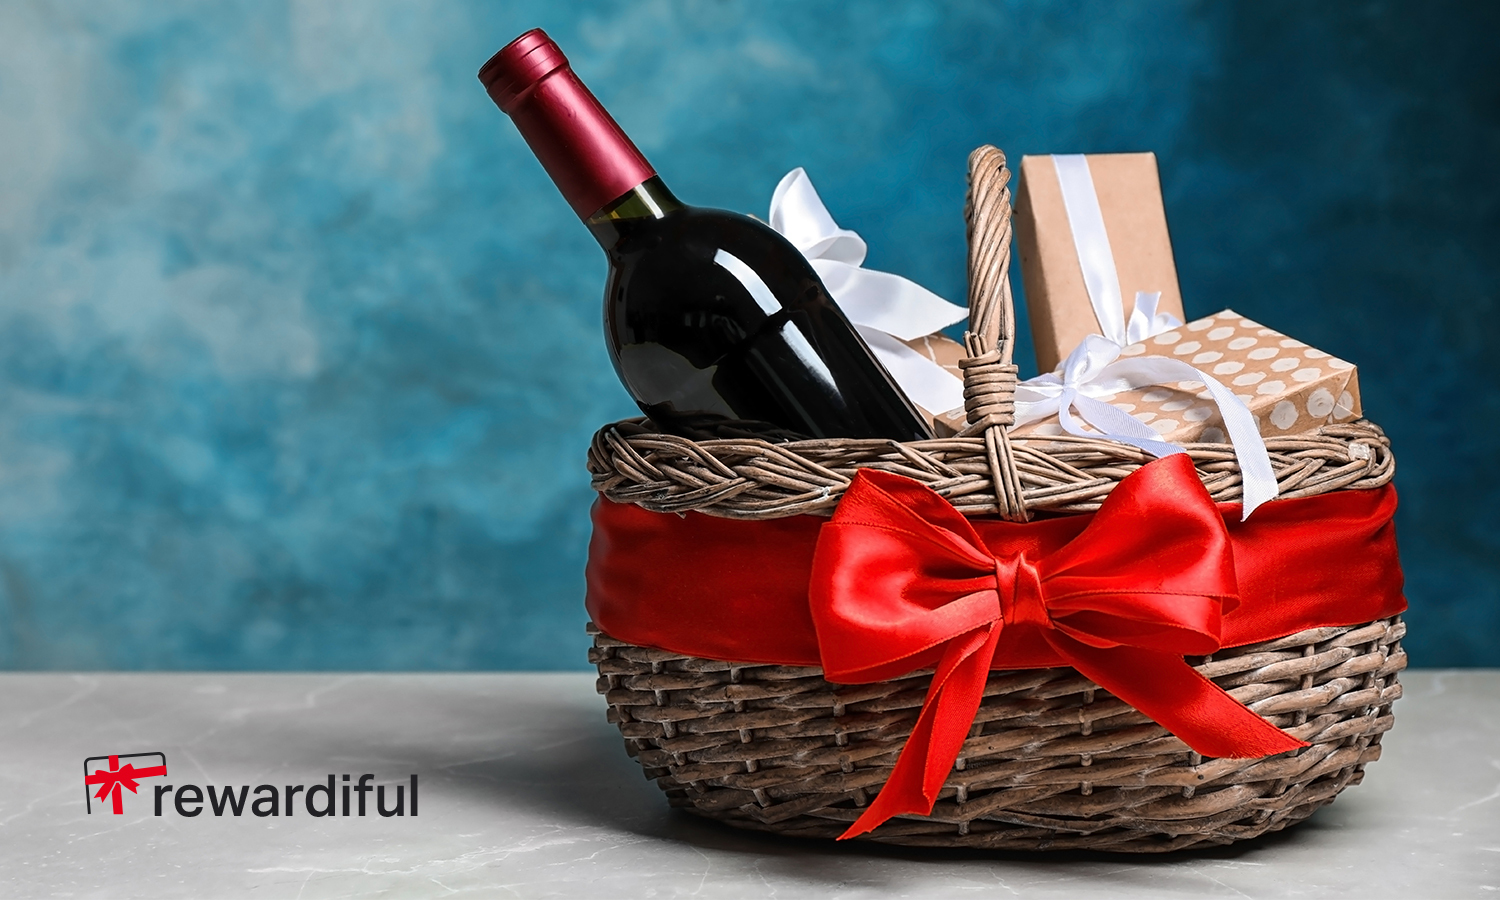 De Crăciun, răsplătește-ți clienții și partenerii  cu cadouri prin Rewardiful.com